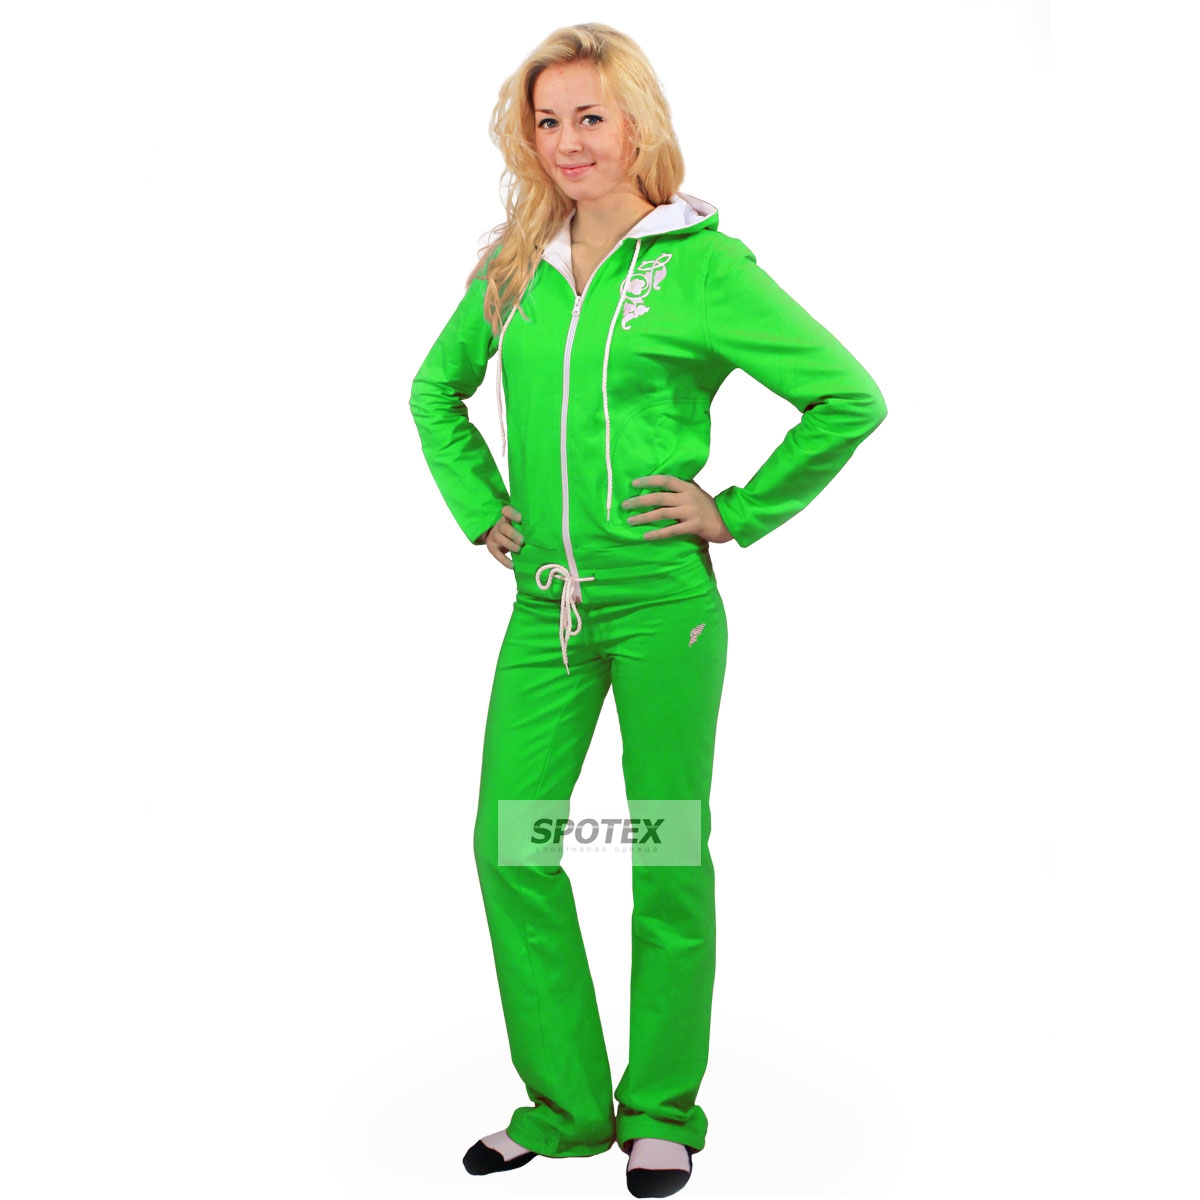 Вайлдберриз женские спортивные костюмы недорогие. Спортивный костюм адидас женский зеленый. Костюм адидас салатовый женский. Костюм адидас женский светло зелёный. Женщина в спортивном костюме.